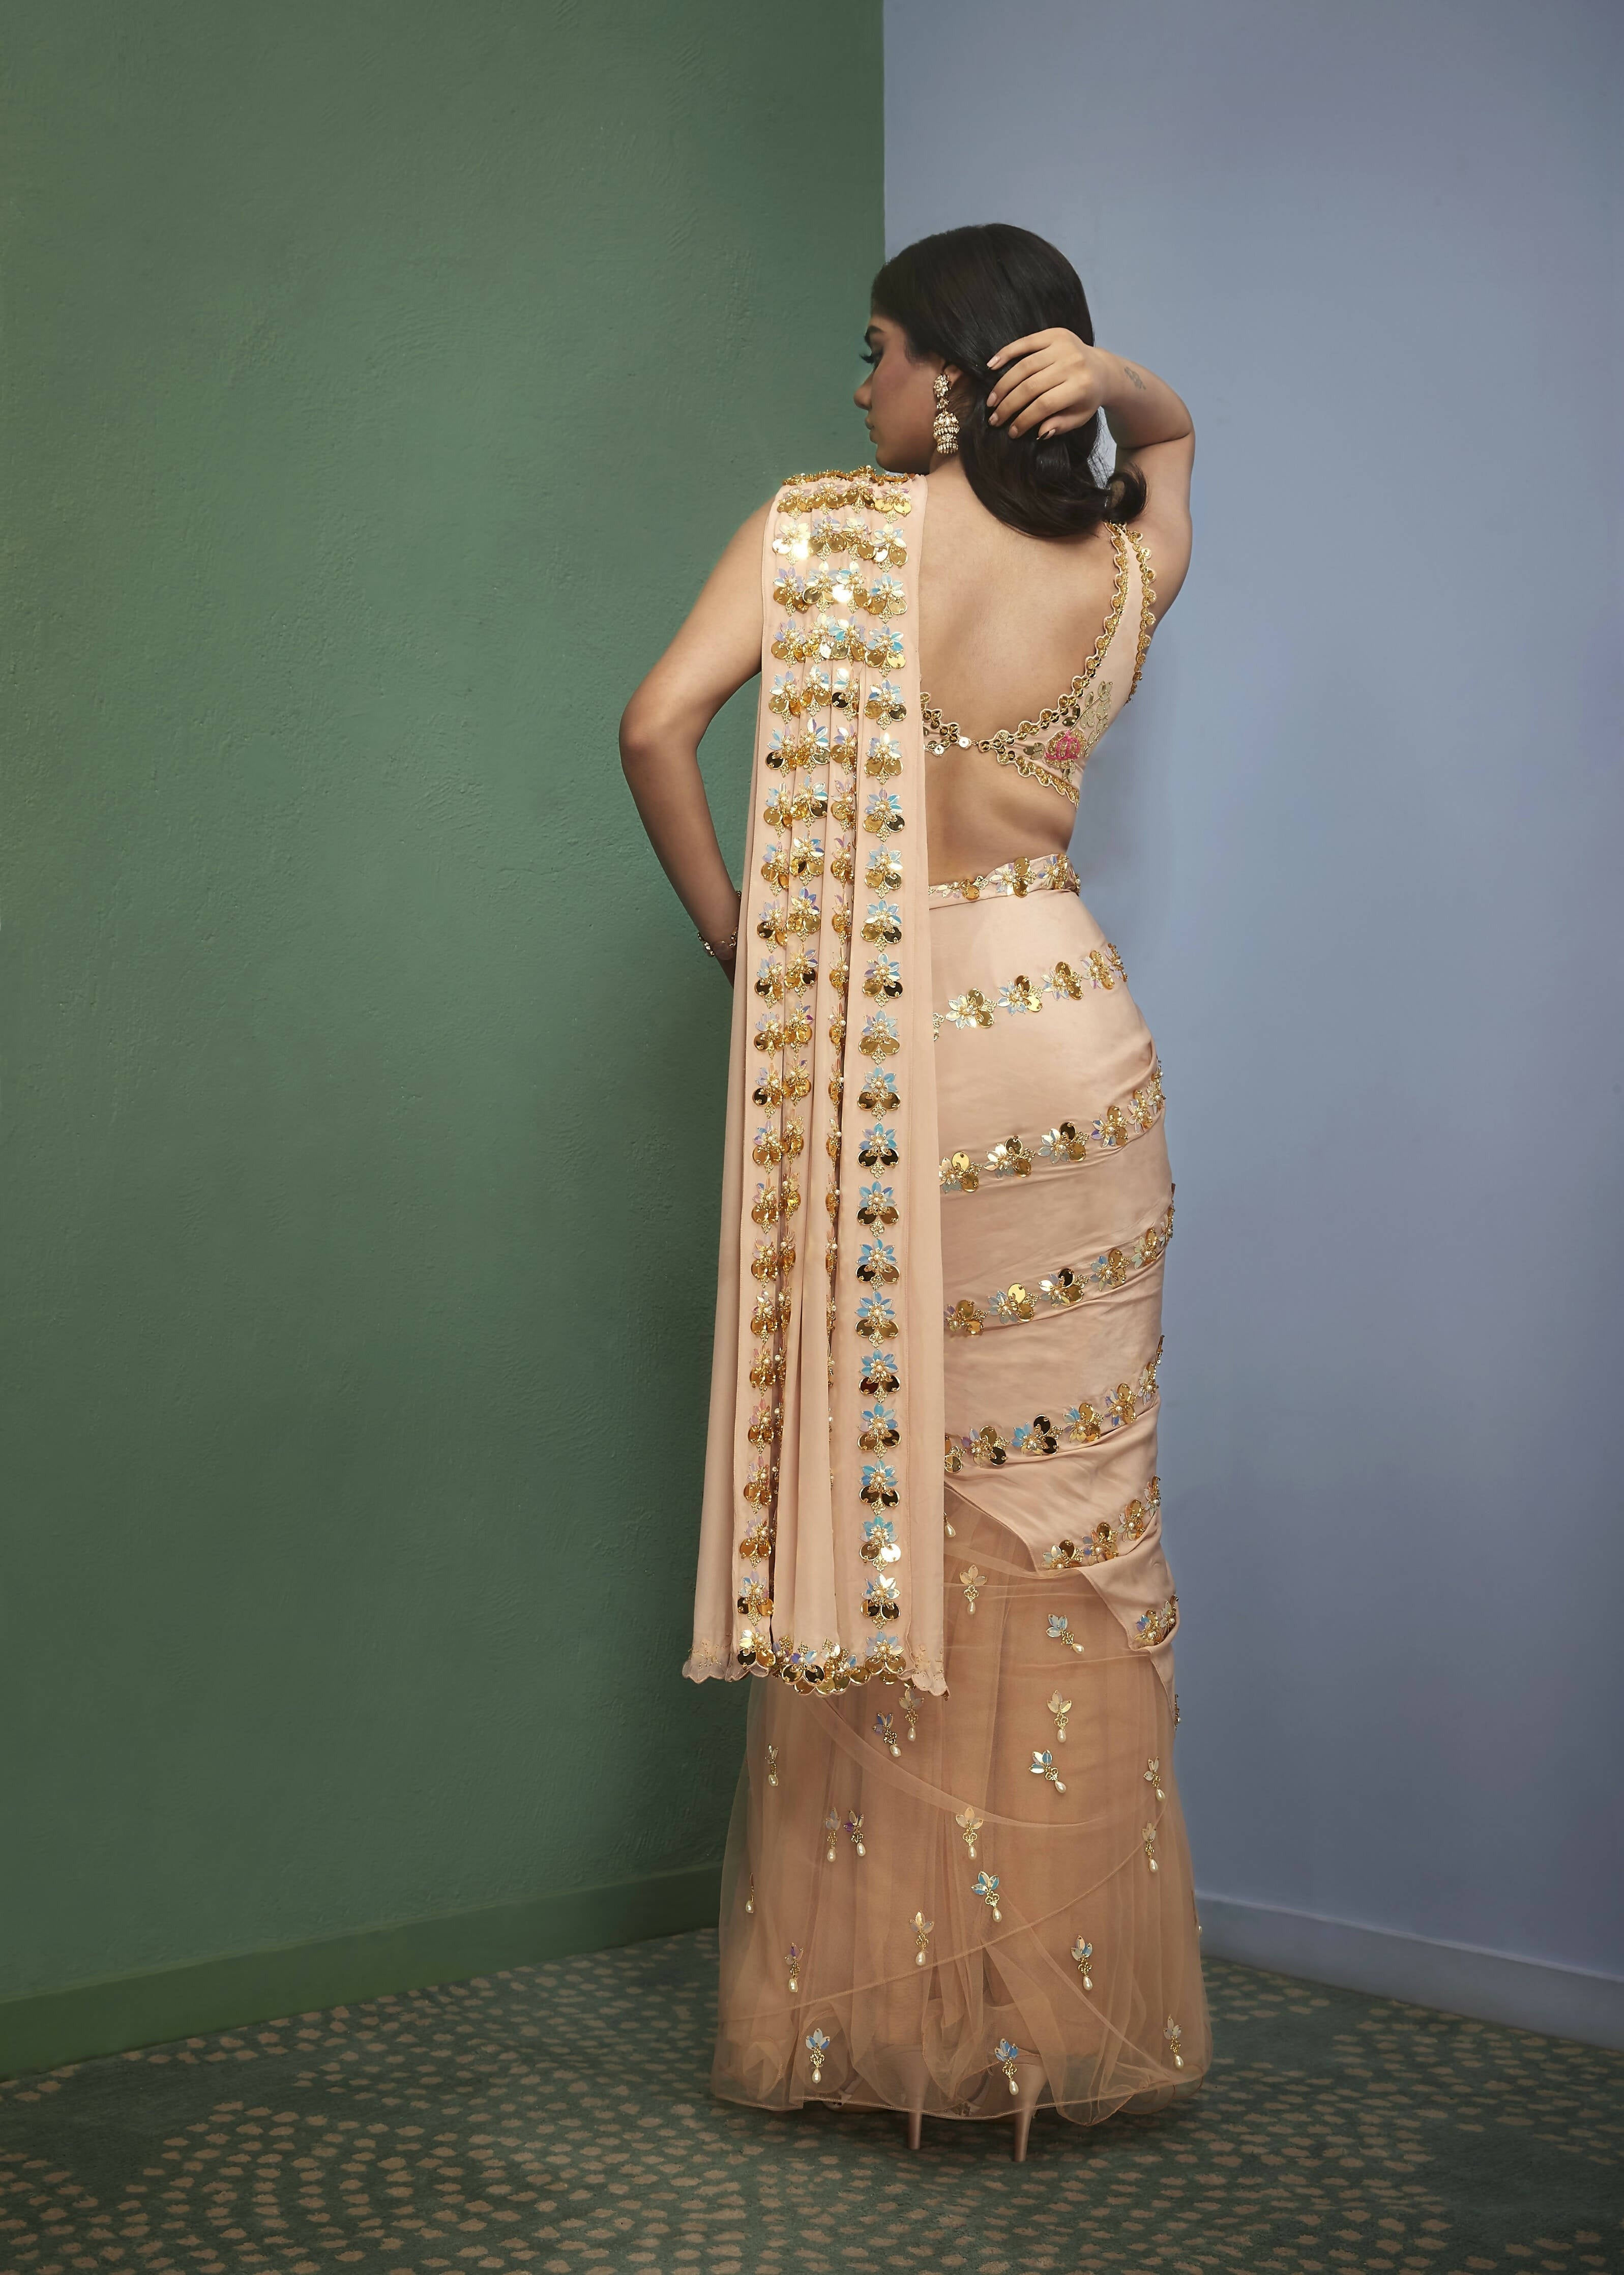 Golden Hour: Nude Prestitched Embellished Sari